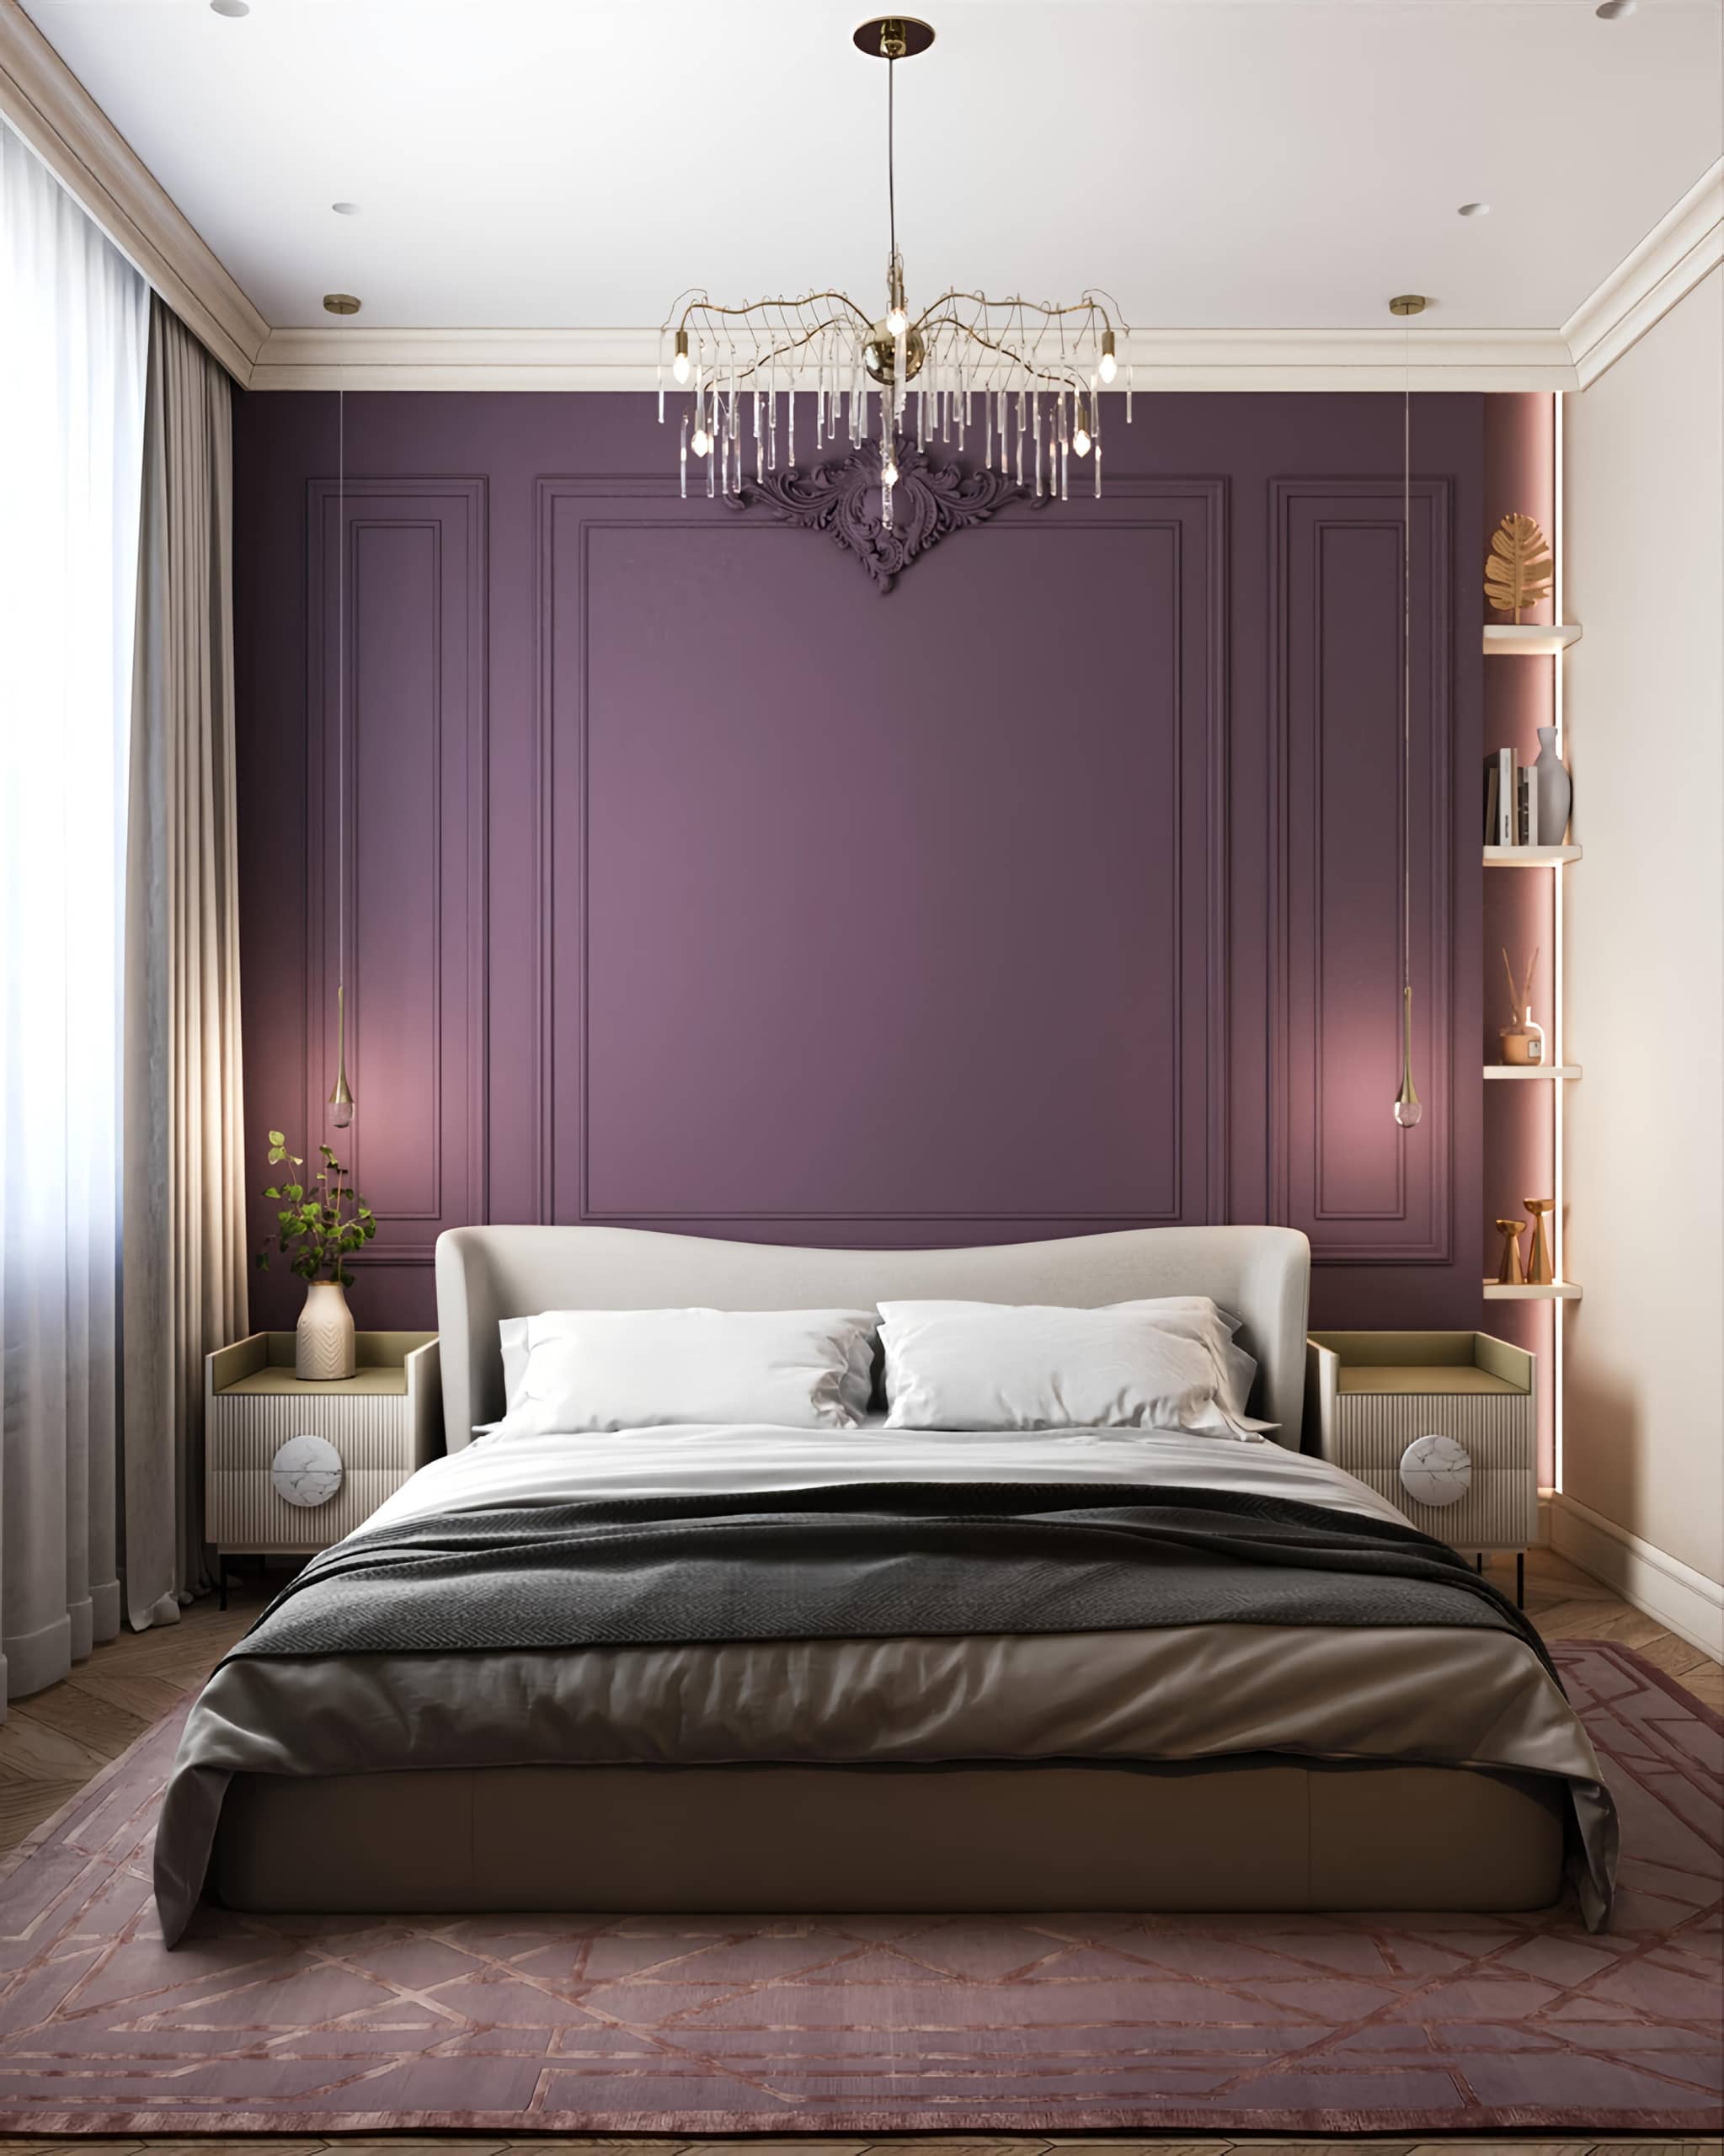 Оформление интерьера спальни в стиле современной классики. Фото № 72396.